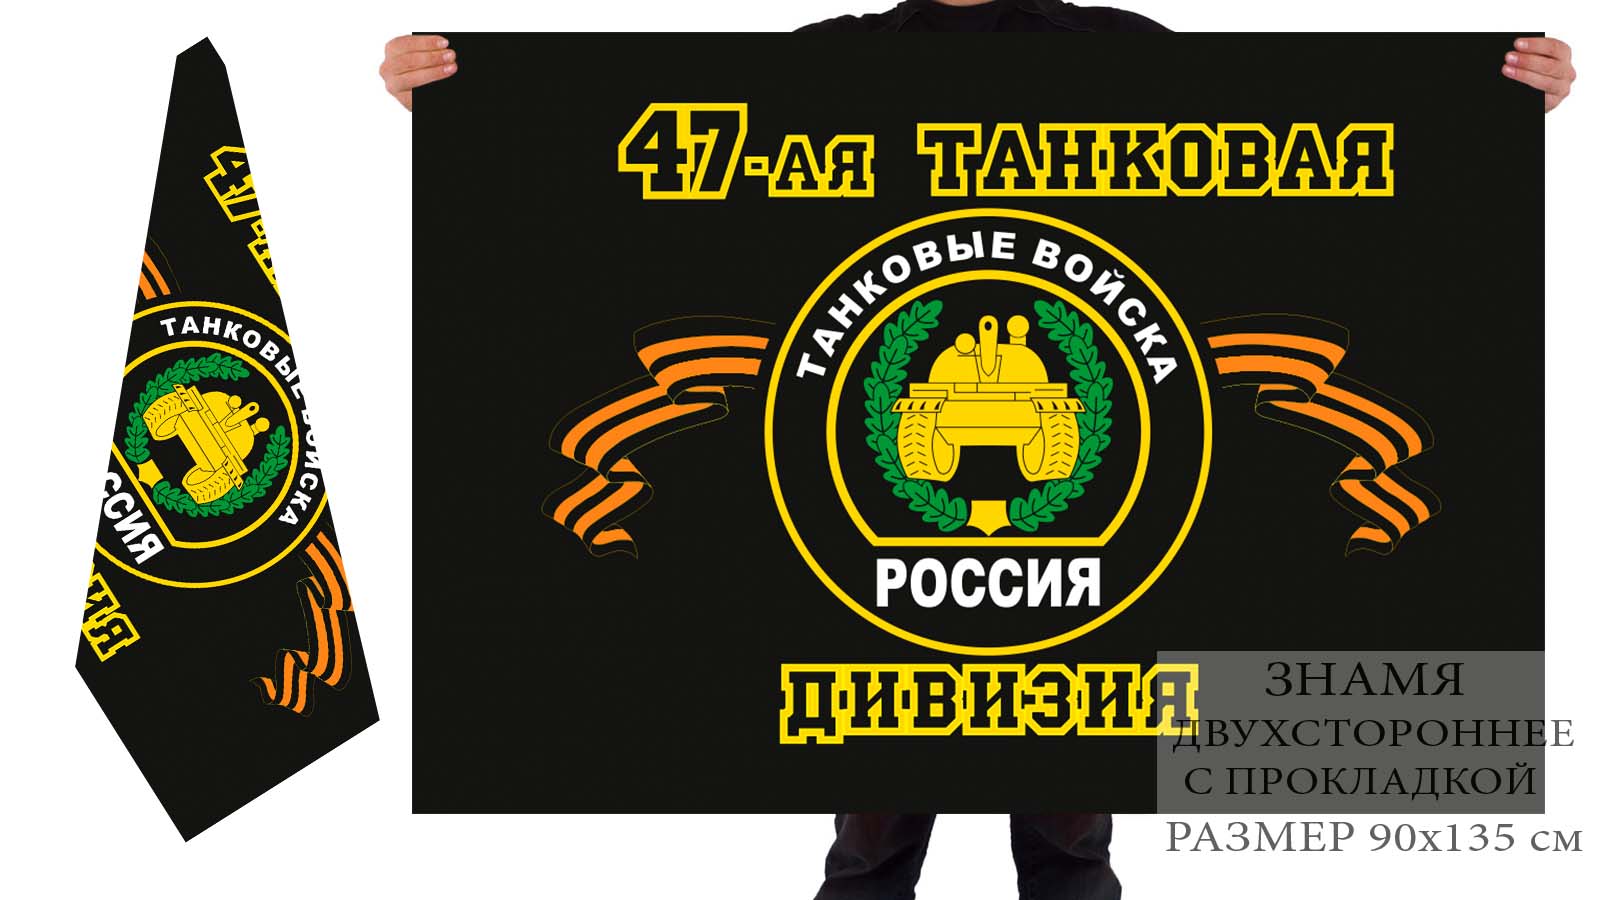 Двусторонний флаг 47 танковой дивизии